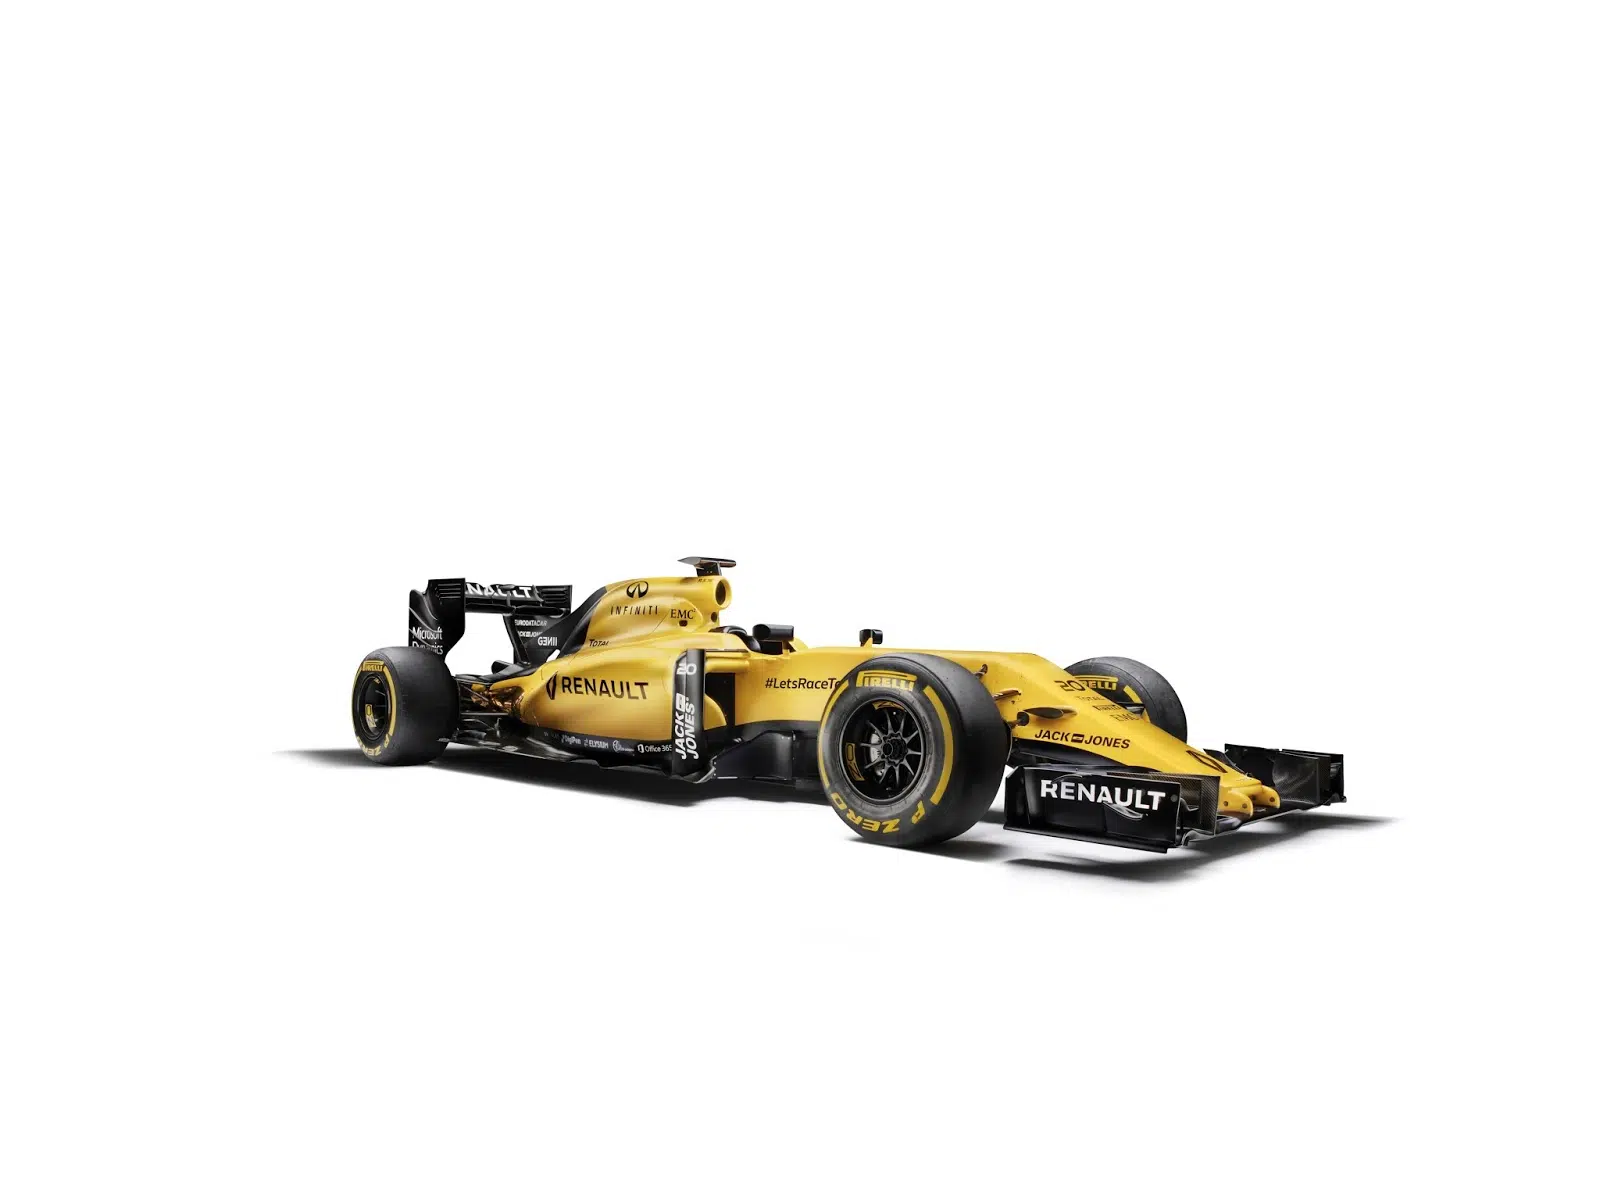 00098717 Das Renault Sport Formula 1 Team hat sich für eine einzigartige Art der Präsentation der neuen Teamfarben entschieden